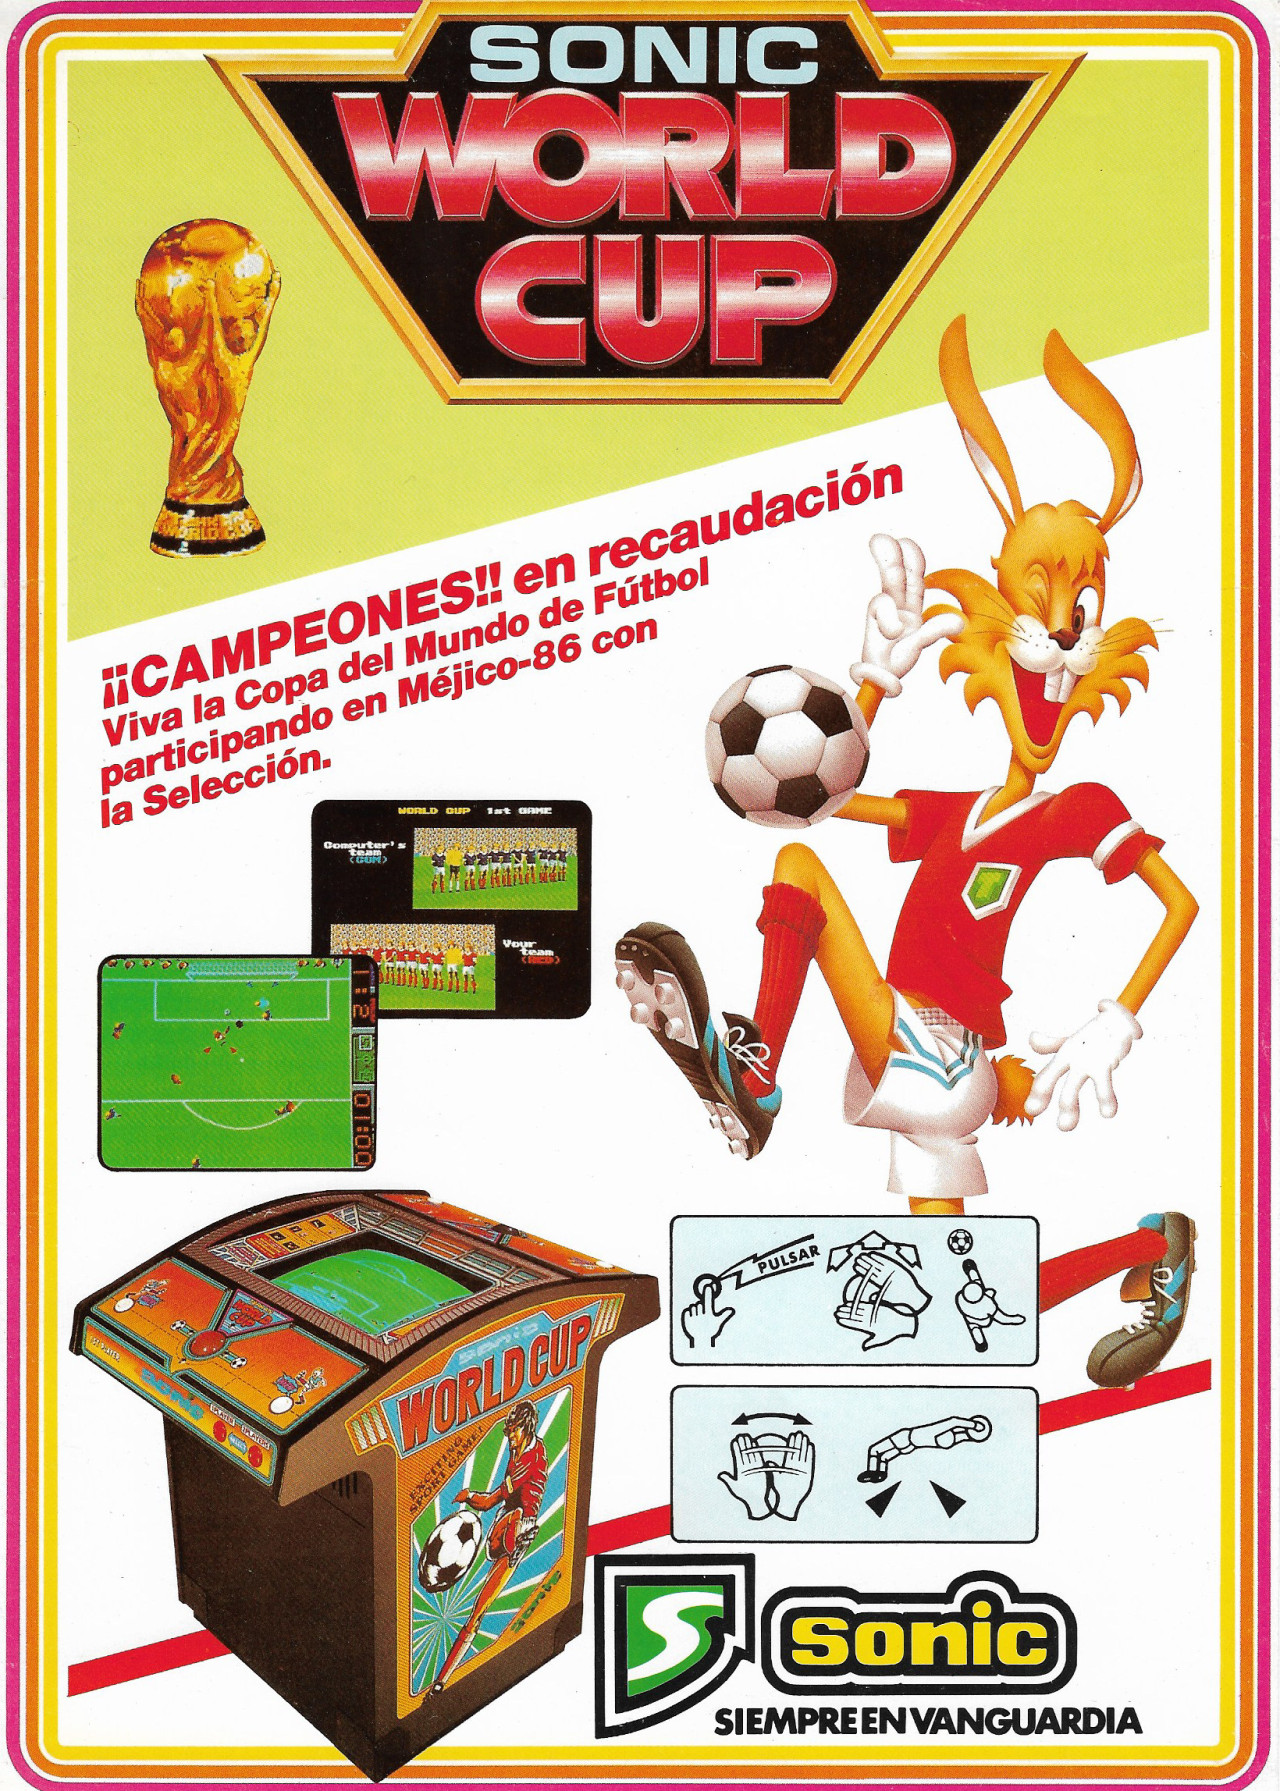 Tehkan World Cup, Sega Sonic. Imagen: Javier Martín.